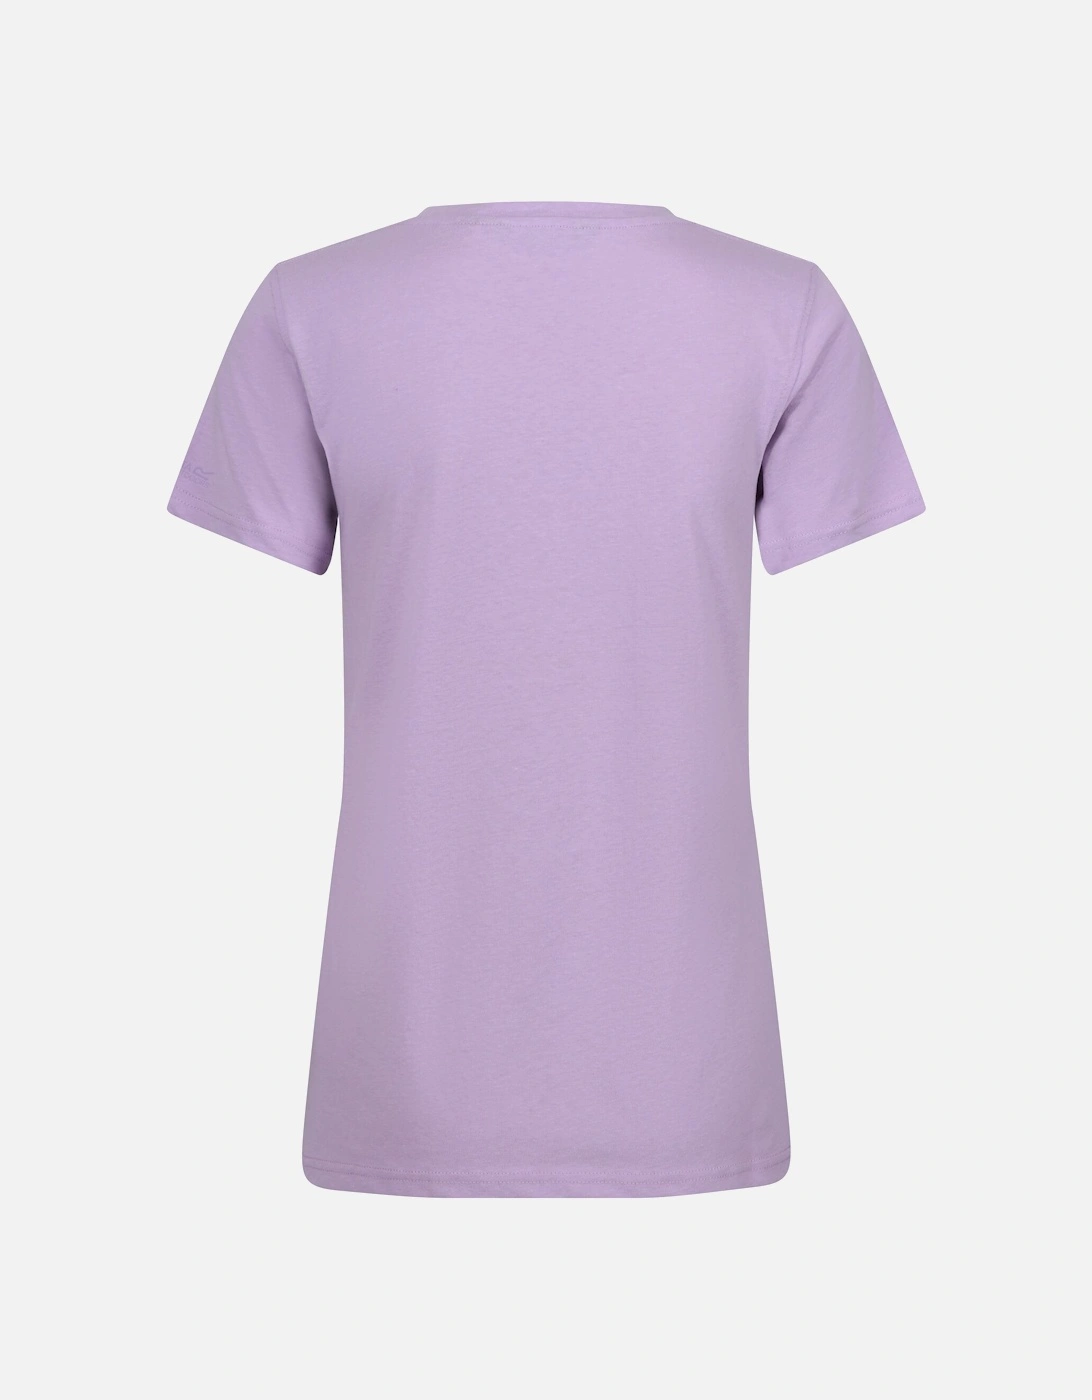 Womens/Ladies Filandra VIII Scenery T-Shirt